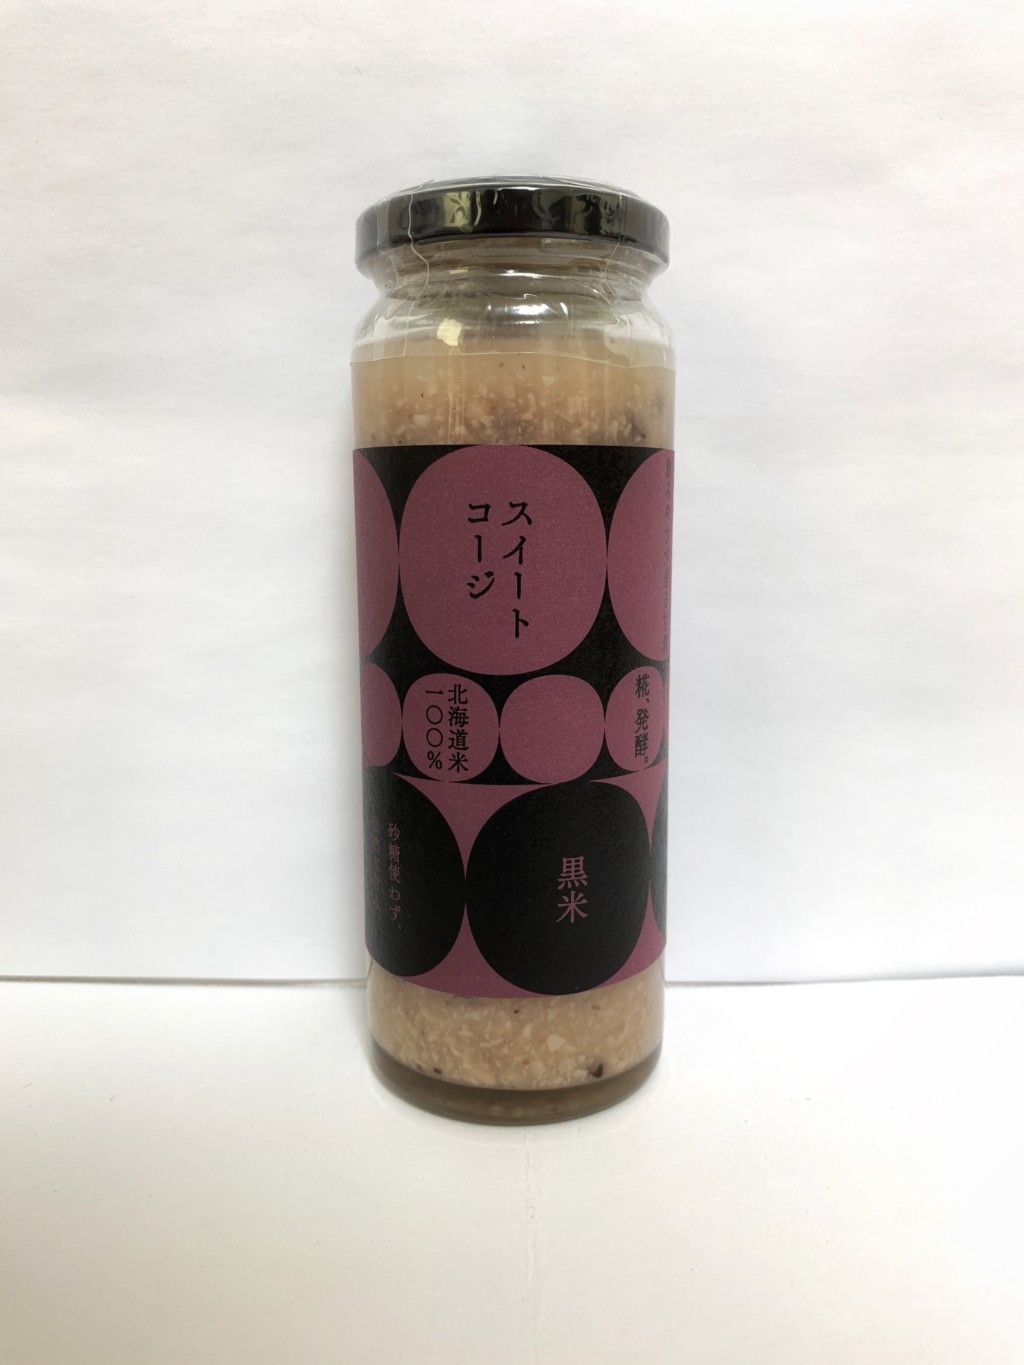 いとげん味噌工房の米麹甘酒『スイートコウジ-黒米-』